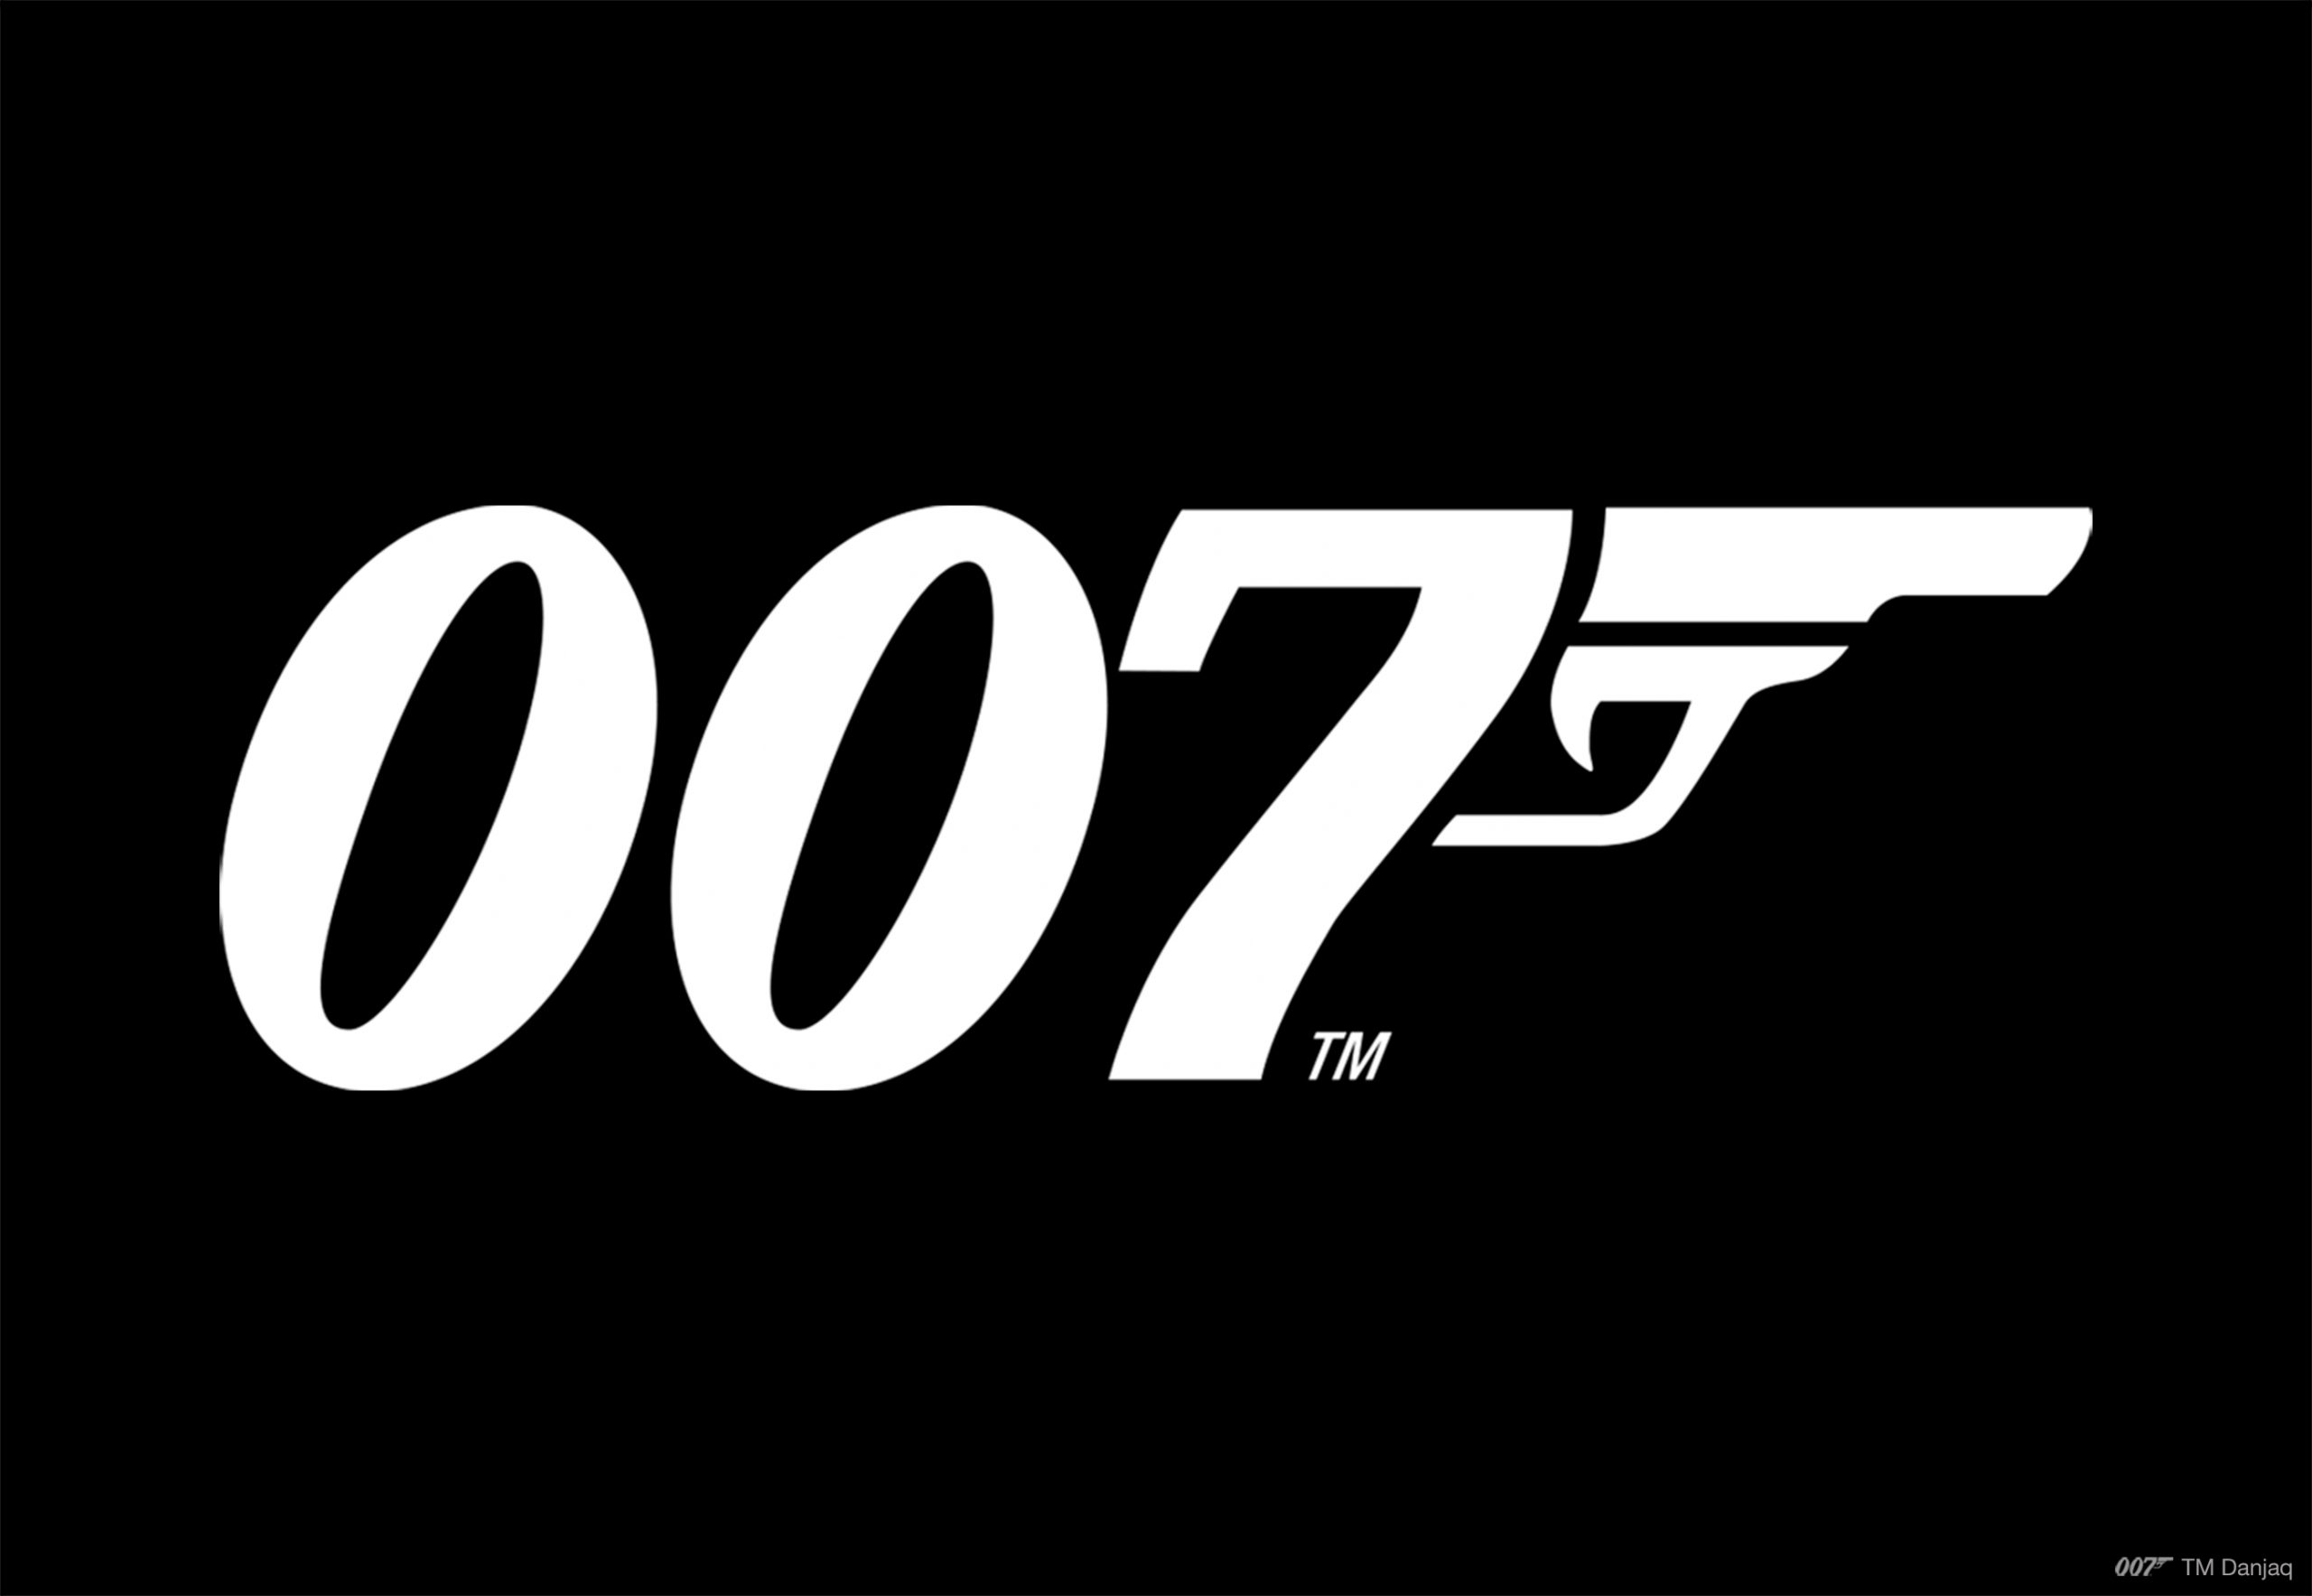 Le trailer complet de la deuxième mission de 007 : legends, On her Majesty's secret service